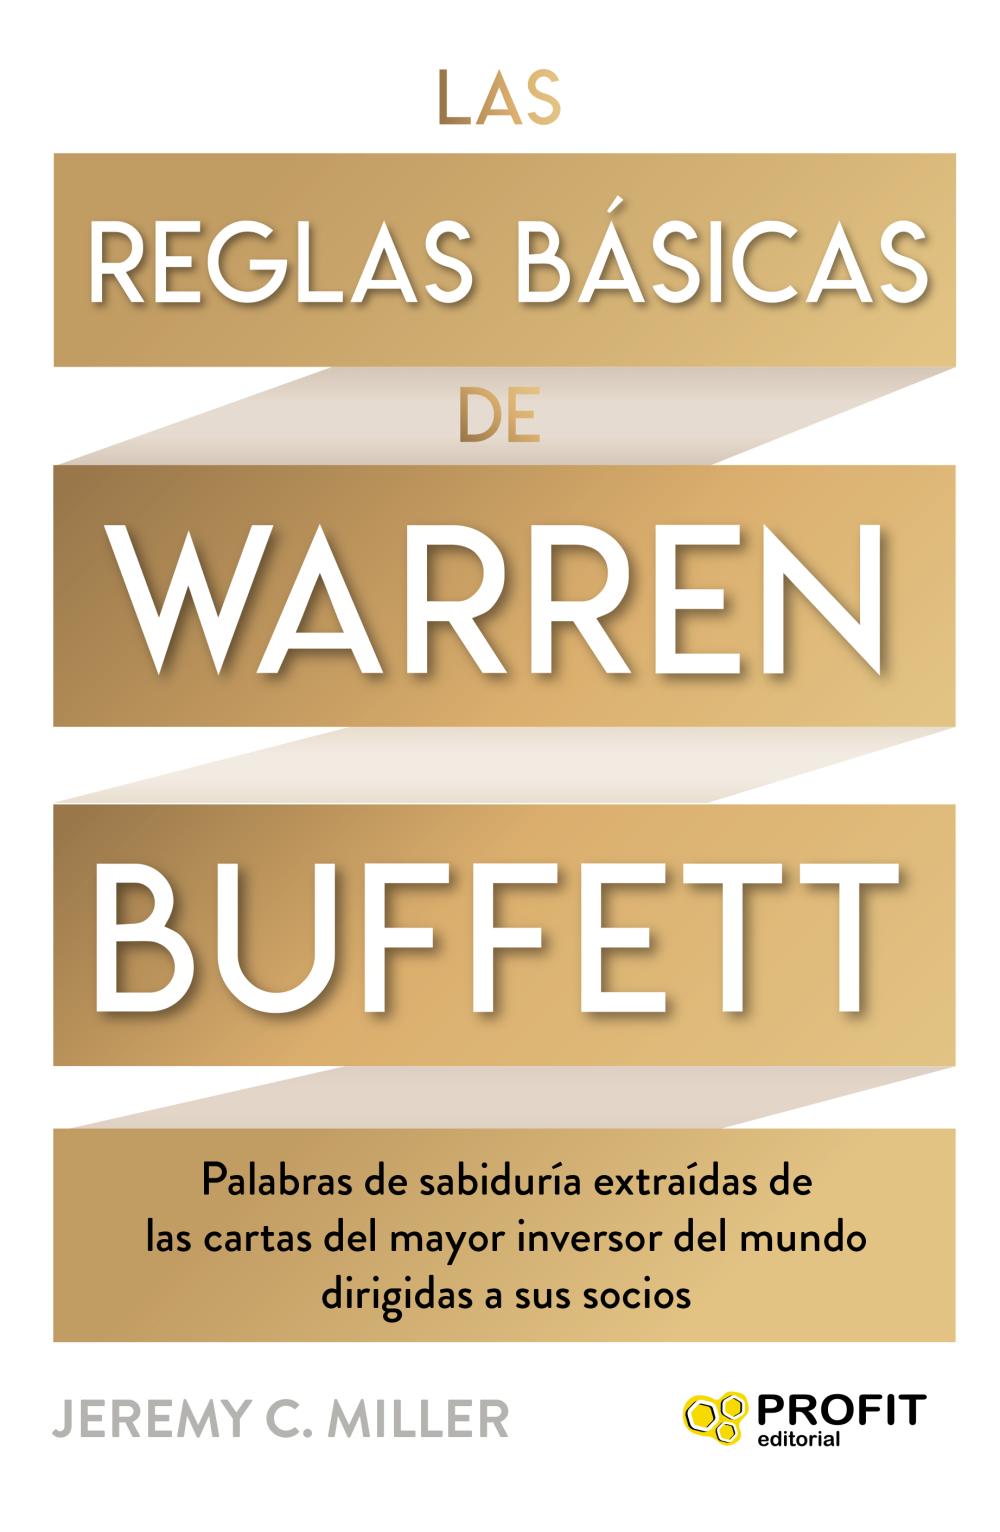 Las reglas básicas de Warren Buffett | Katakrak - Librería, Cafetería,  Editorial, cooperativa